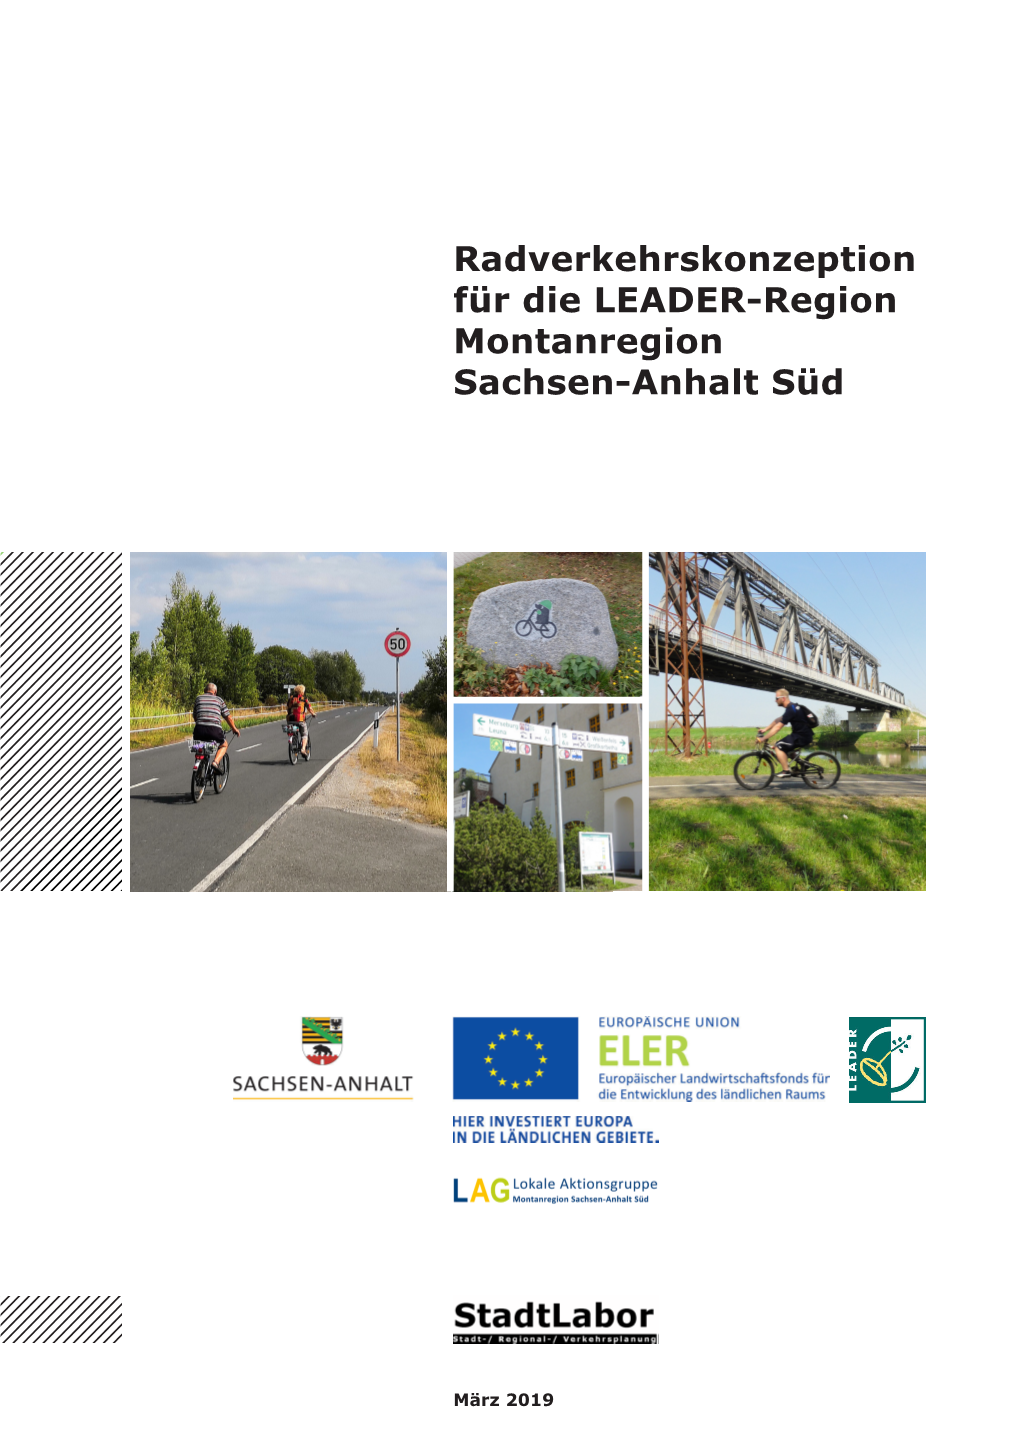 Radverkehrskonzeption Für Die LEADER-Region Montanregion Sachsen-Anhalt Süd